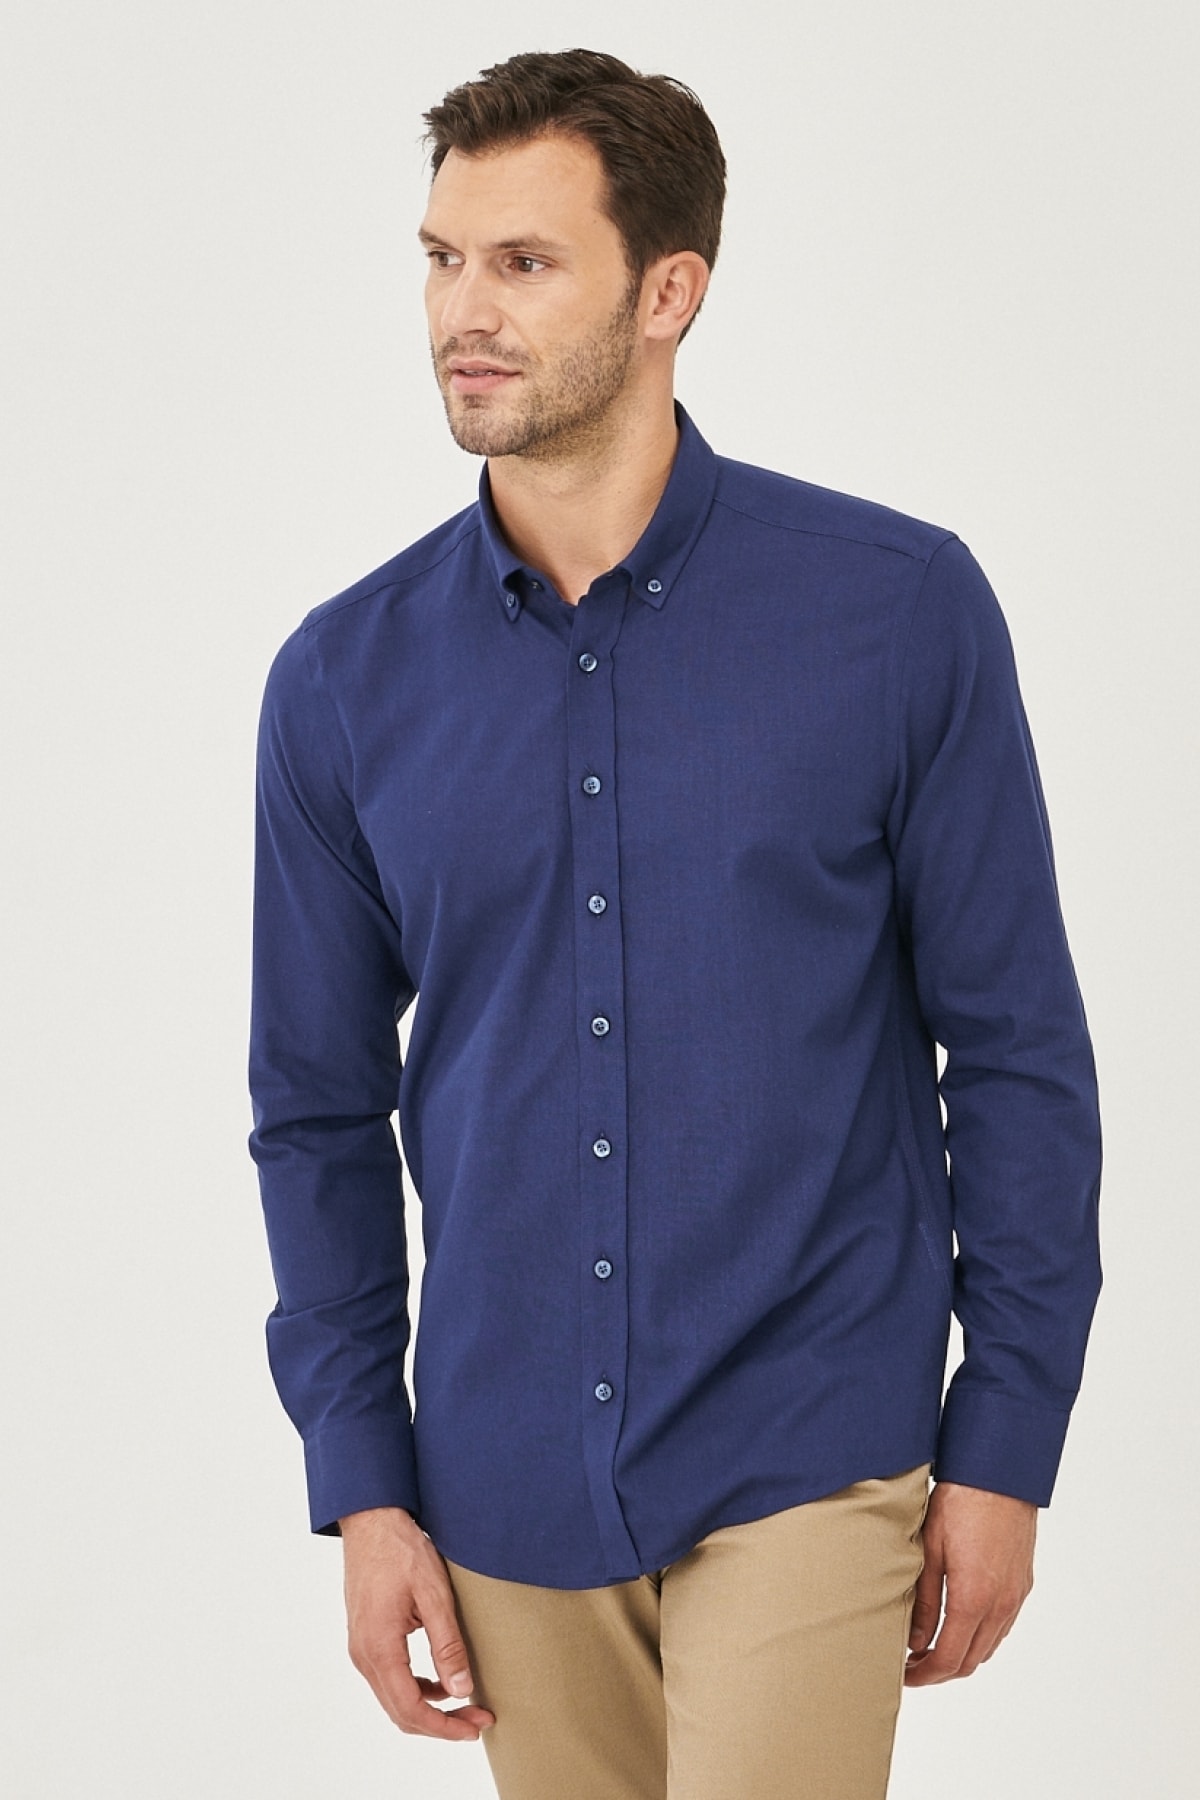 Levně AC&Co / Altınyıldız Classics Men's Navy Blue Tailored Slim Fit Buttoned Collar Linen Look 100% Cotton Flamed Shirt